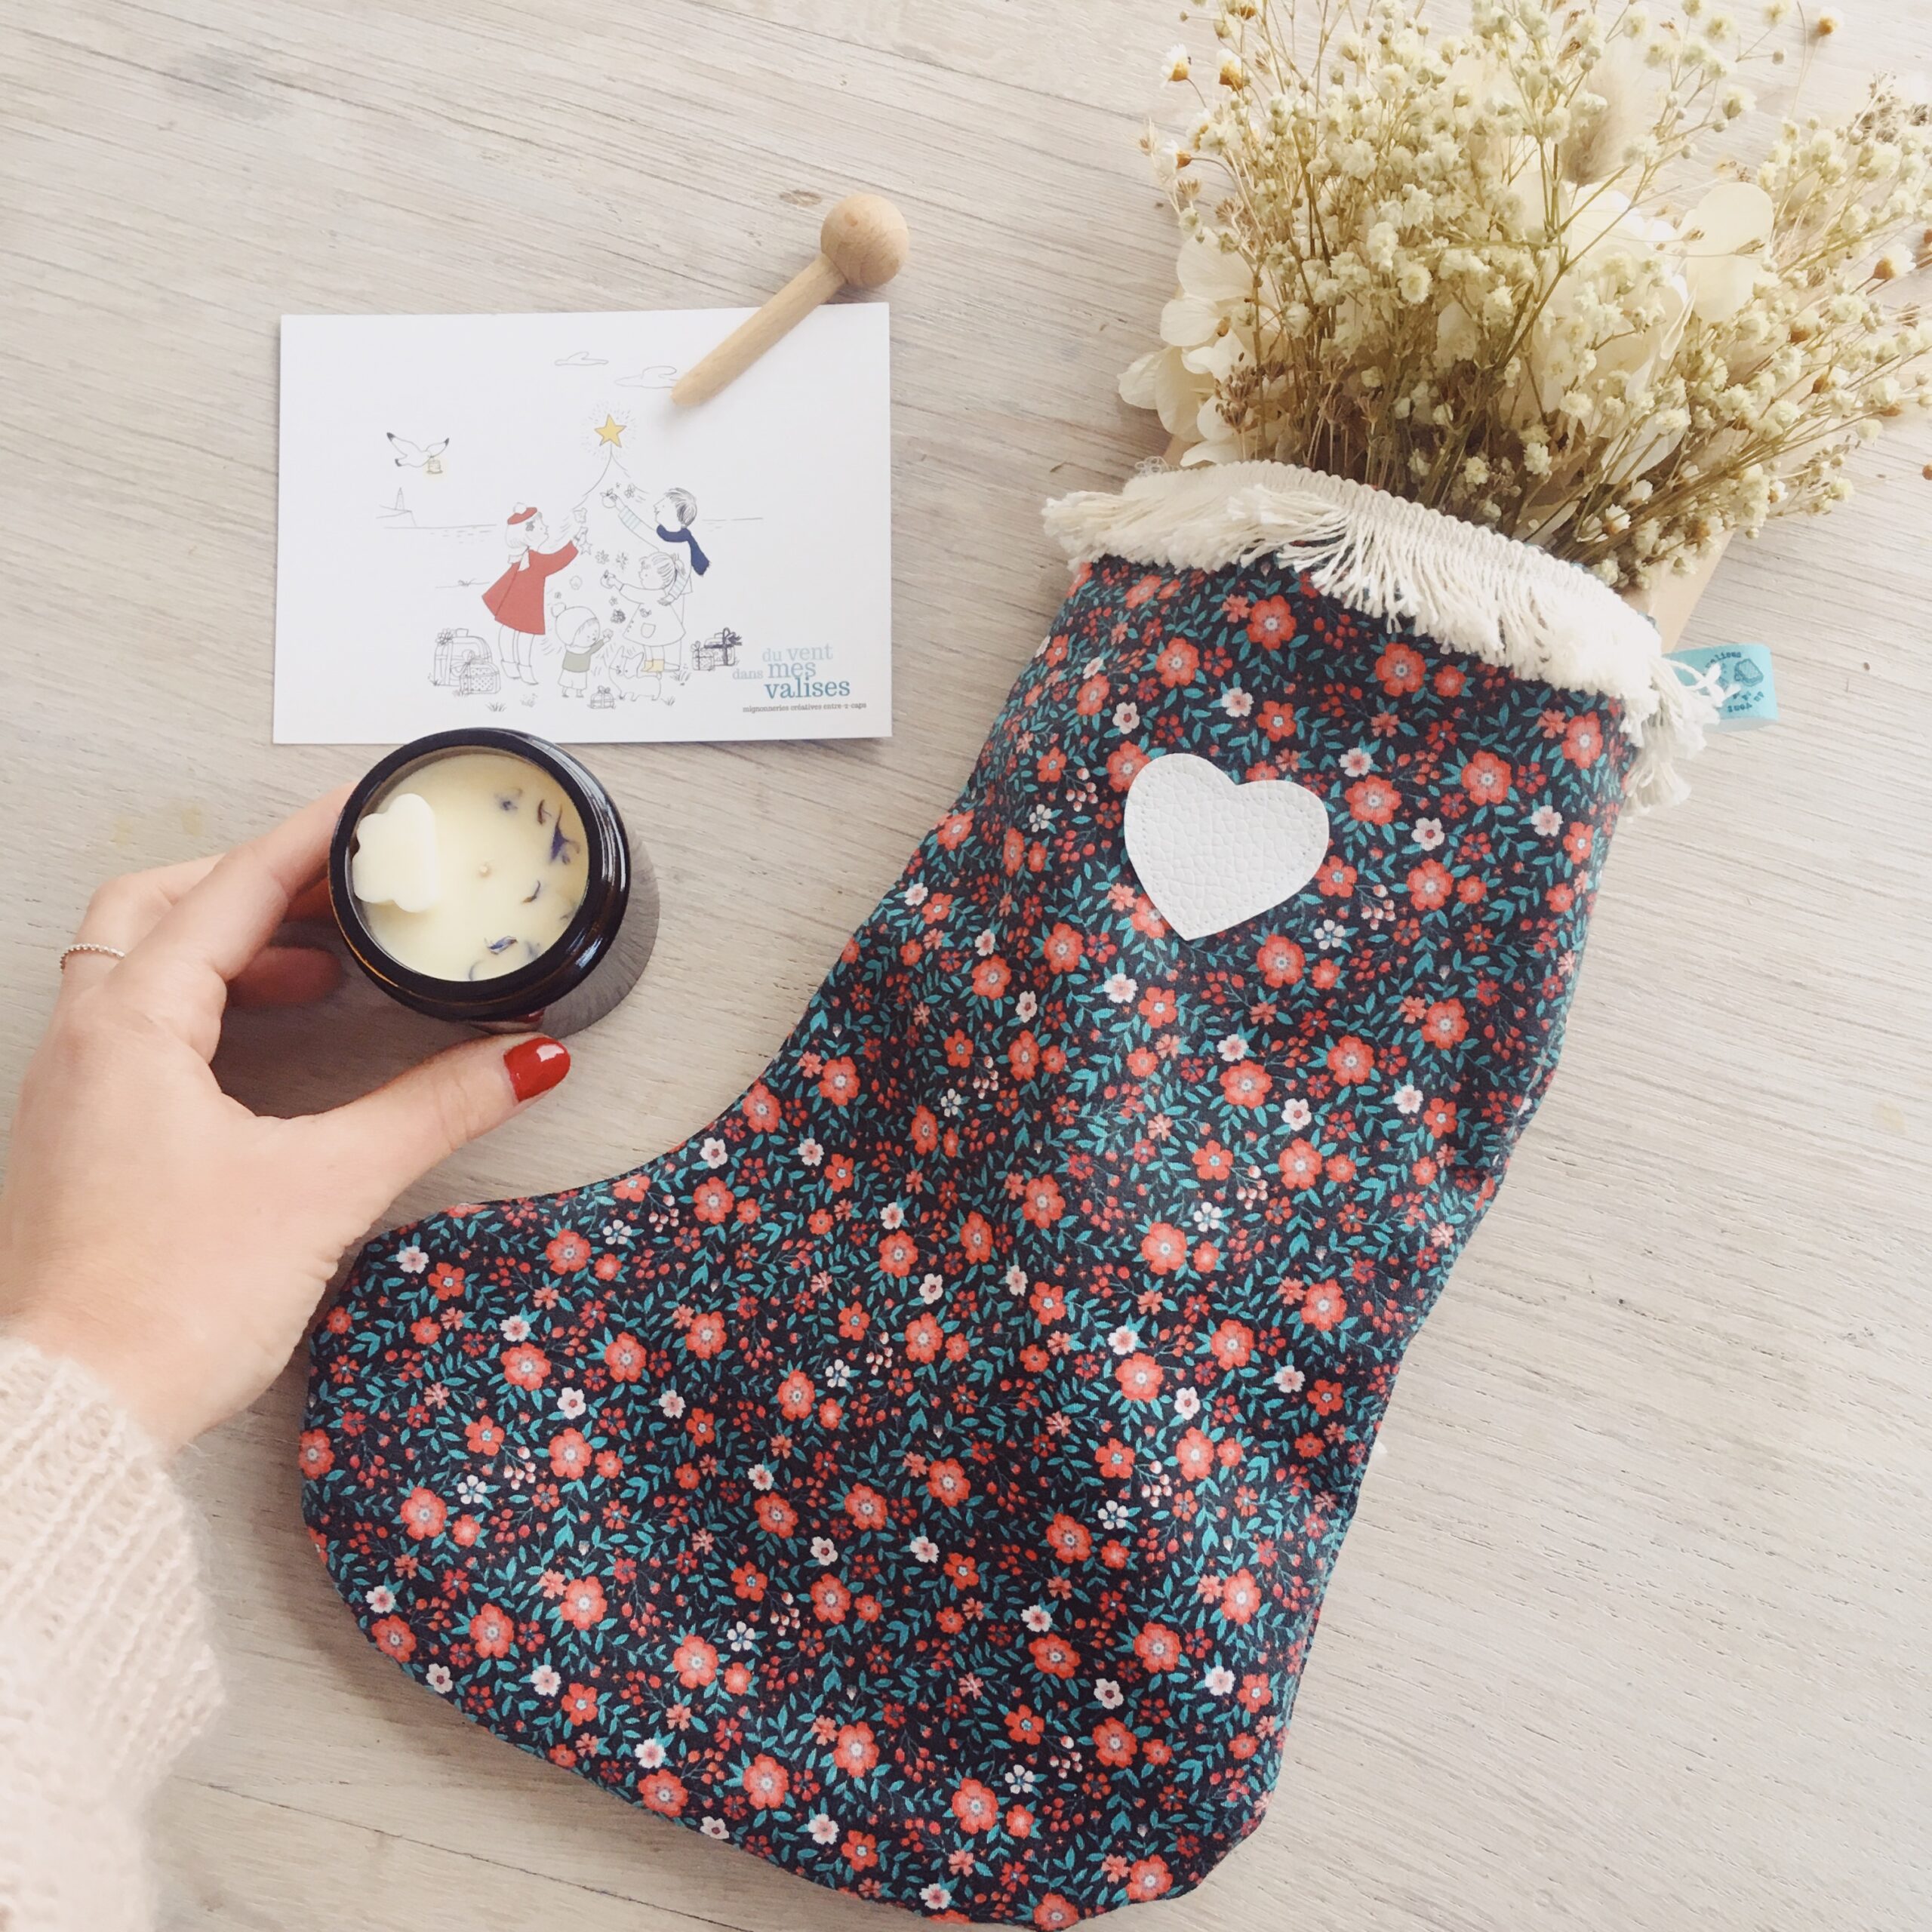 chaussette-de-Noel-boheme-chic-fleurie-ornement-et-decoration-made-in-France-avec-coeur-en-cuir-et-tissu-100-coton-du-vent-dans-mes-valises